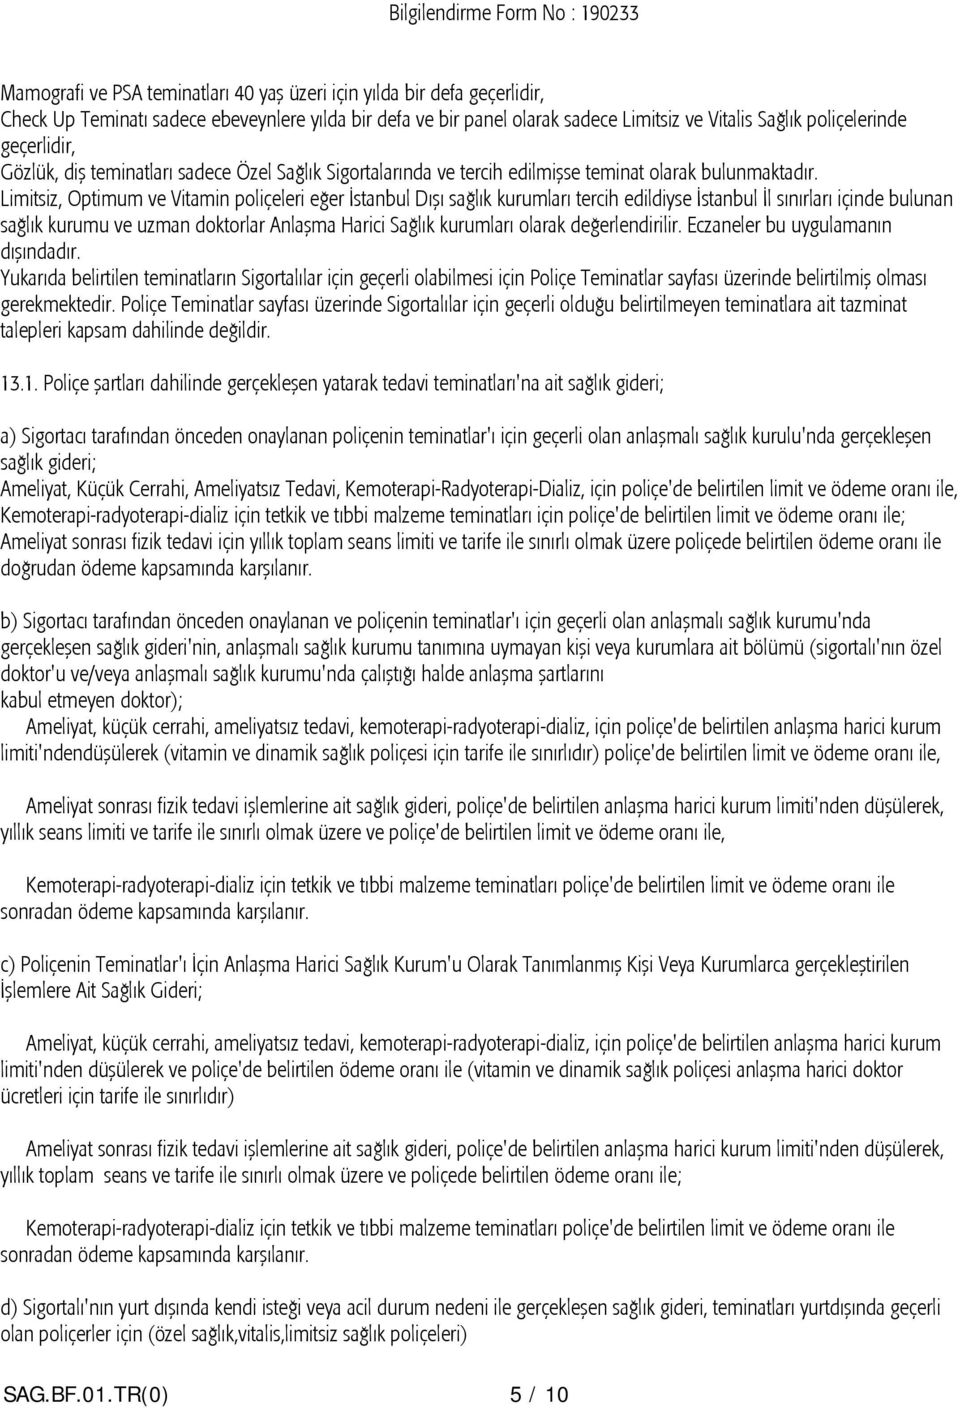 Limitsiz, Optimum ve Vitamin poliçeleri eğer İstanbul Dışı sağlık kurumları tercih edildiyse İstanbul İl sınırları içinde bulunan sağlık kurumu ve uzman doktorlar Anlaşma Harici Sağlık kurumları